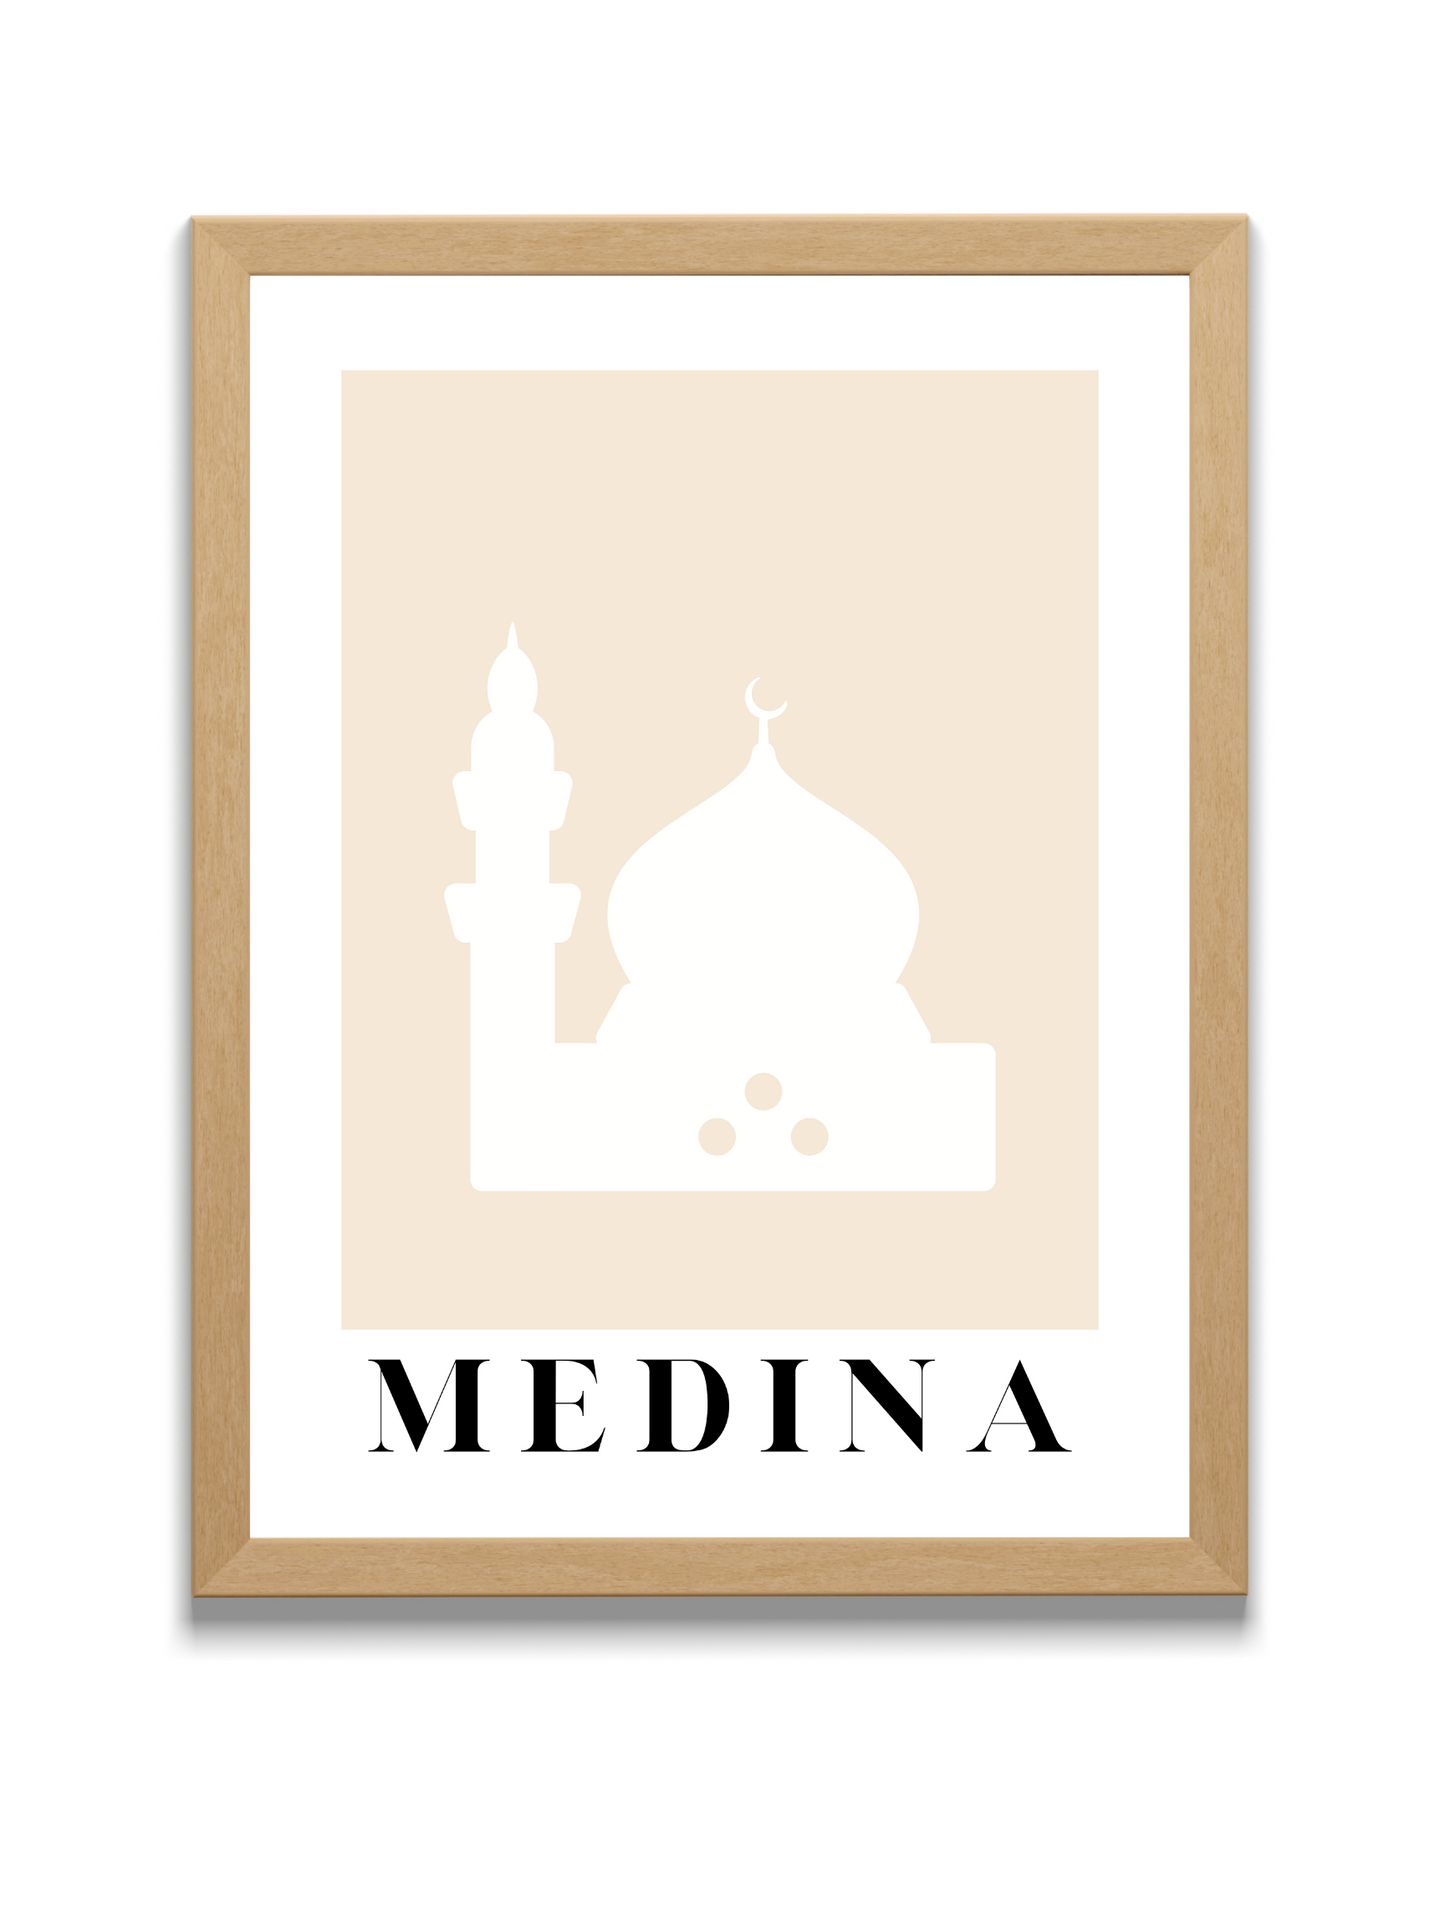 Medina | City of Muhammad pbuh